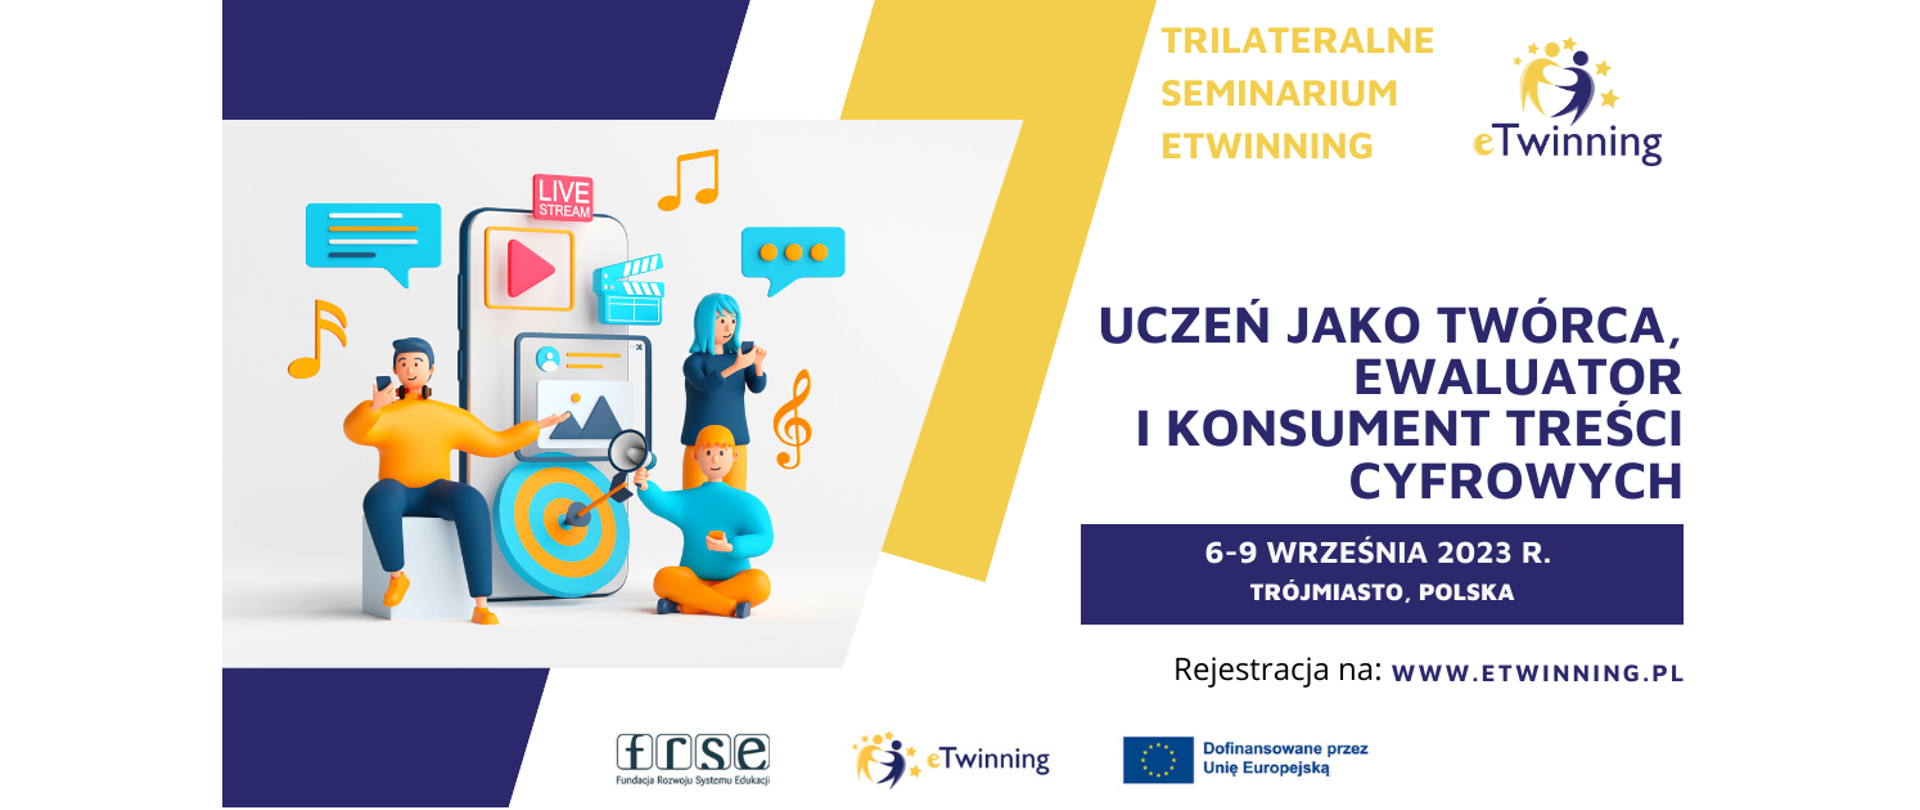 Uczeń jako twórca, ewaluator i konsument treści cyfrowych. 6-9 września 2023 r. Trójmiasto, Polska.